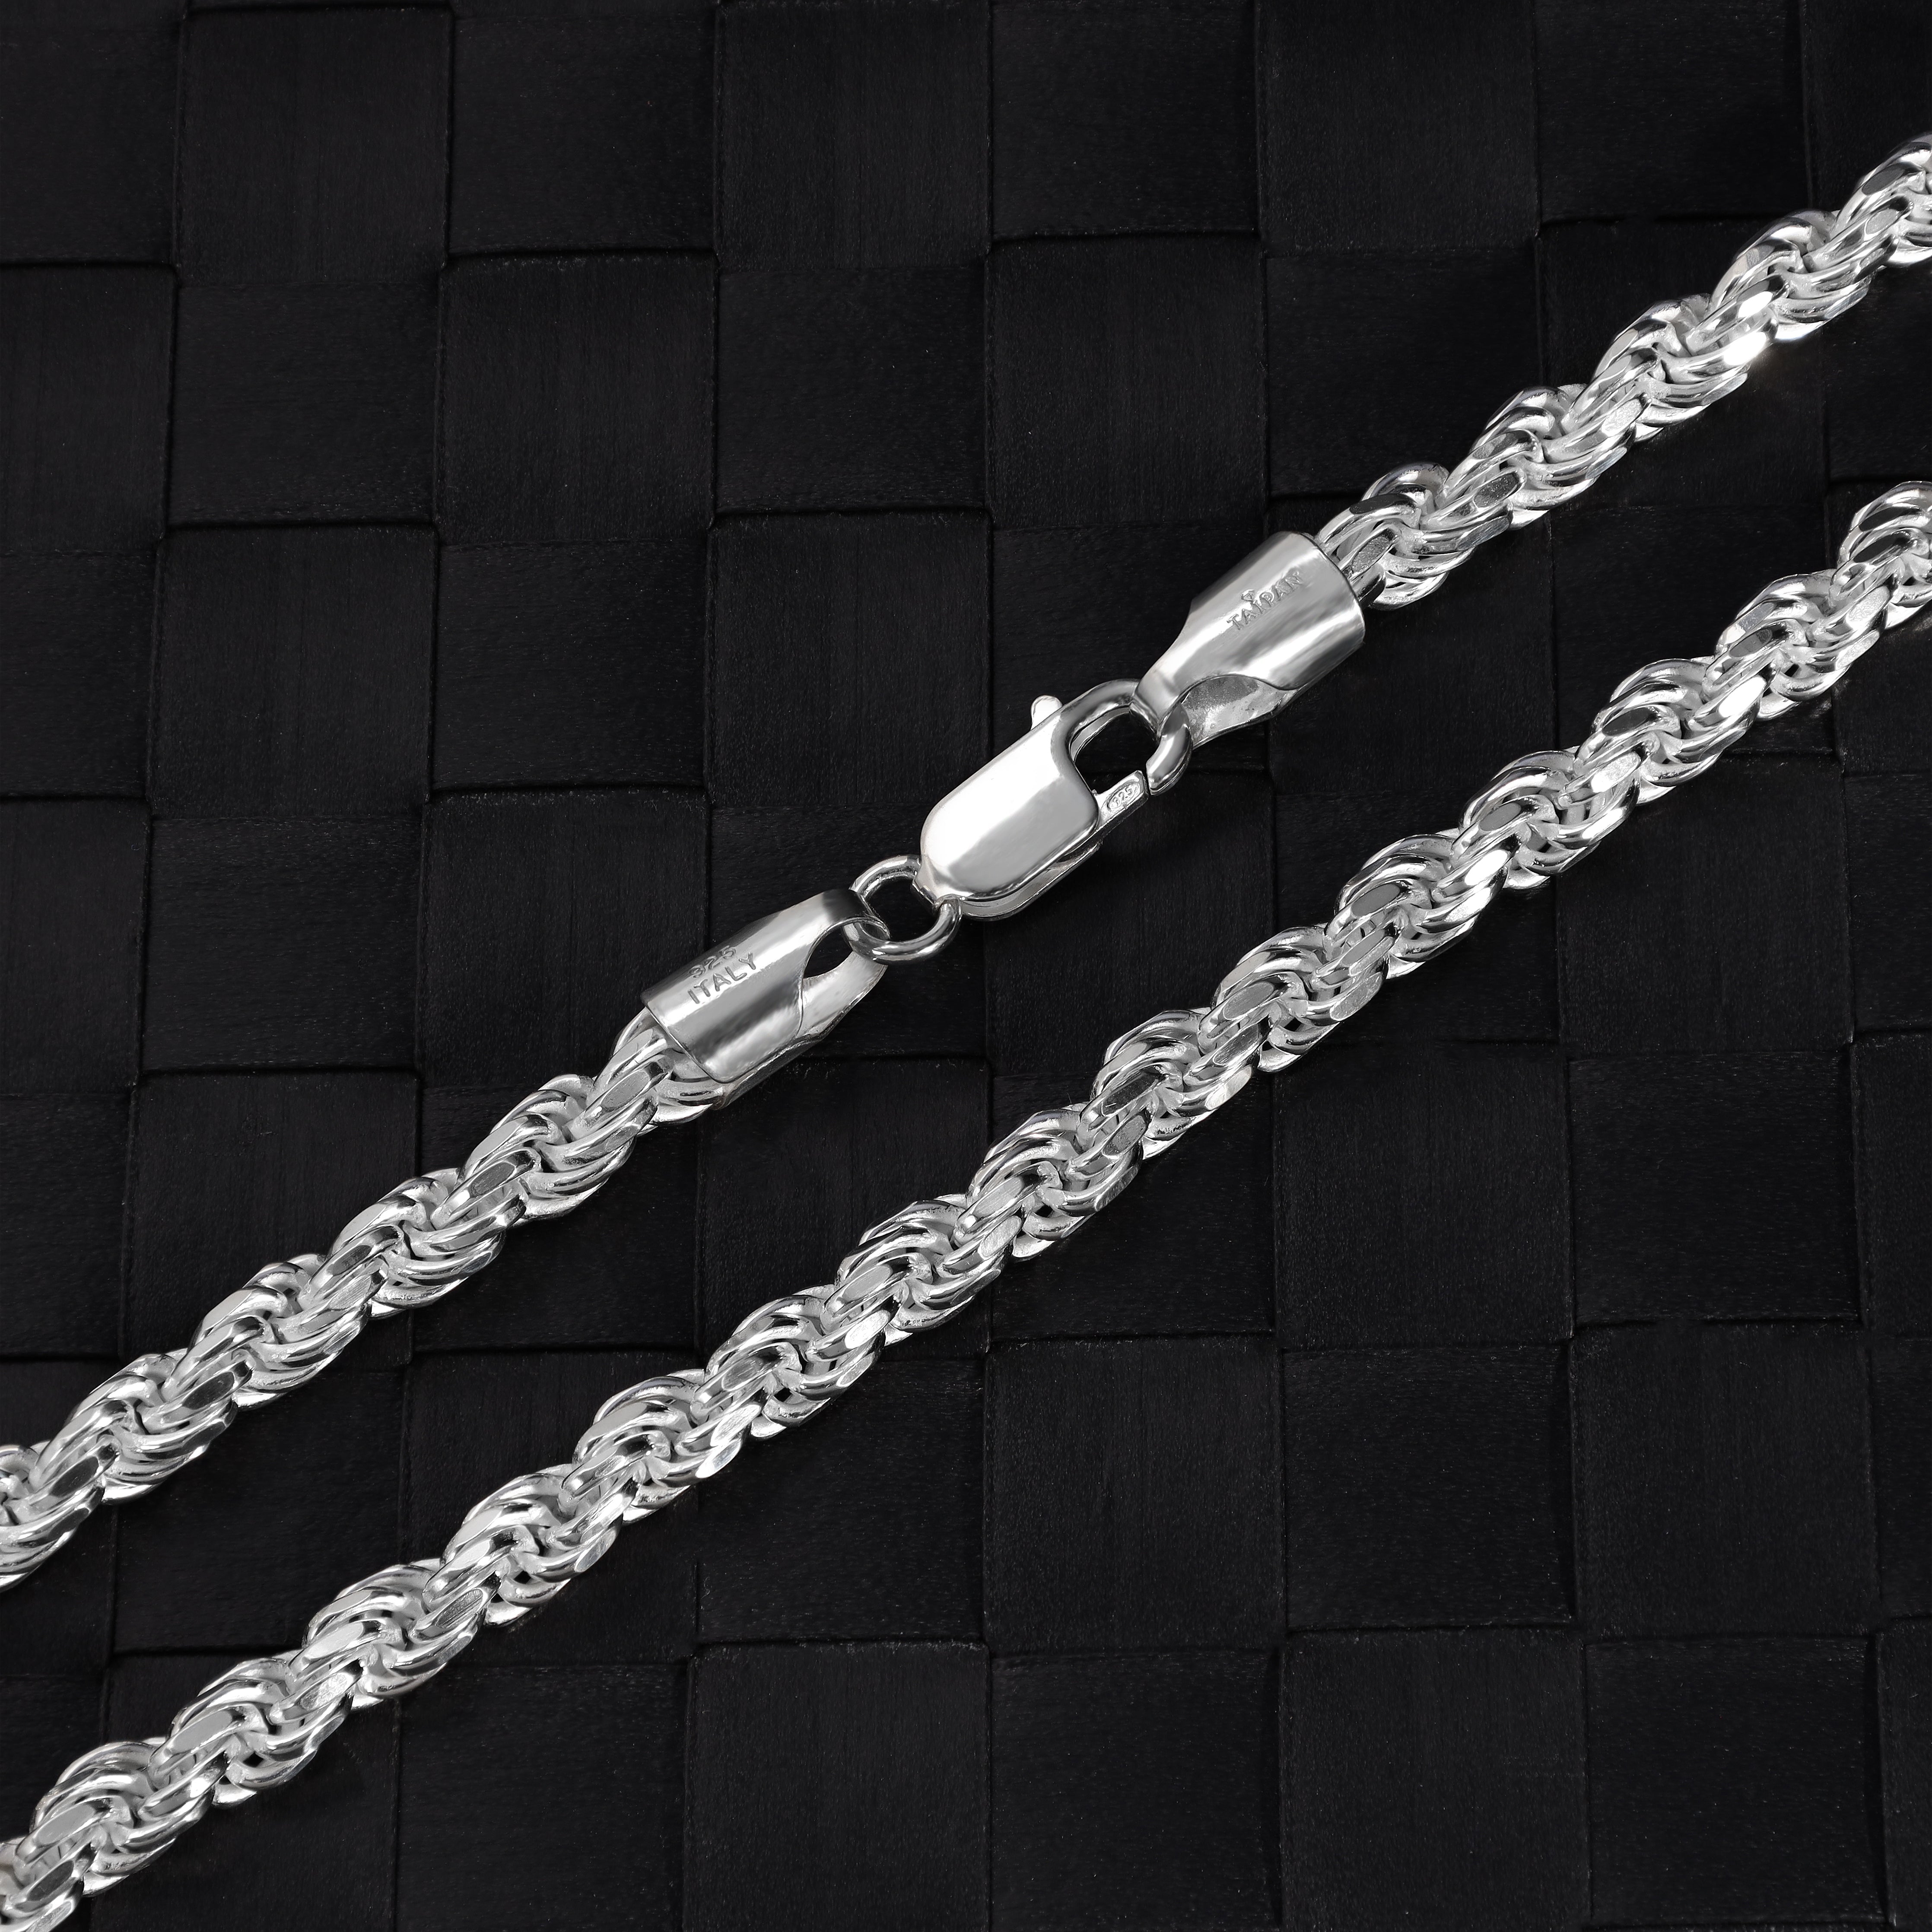 Kordelkette Rope Chain 5mm breit 55cm lang massiv 925 Sterling Silber (K1026) - Taipan Schmuck